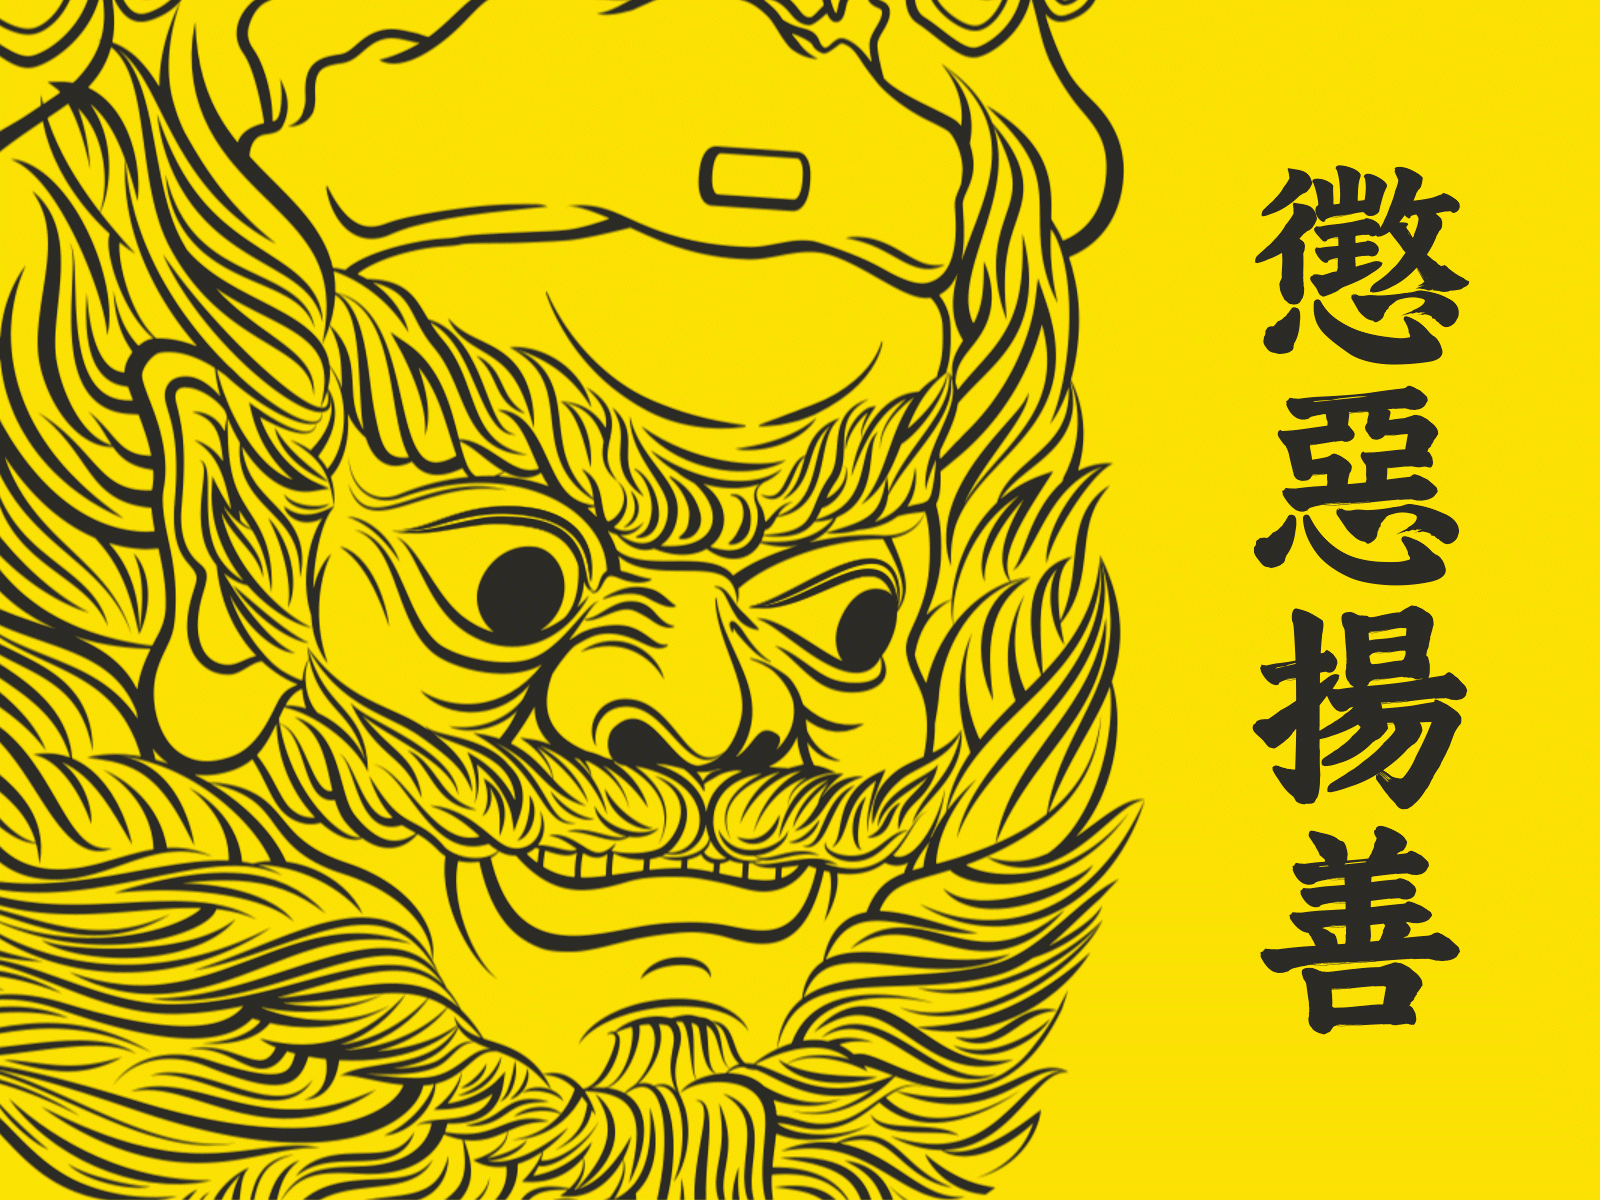 鍾馗 Zhong Kui animation deity gif graphic design illustration motion graphics